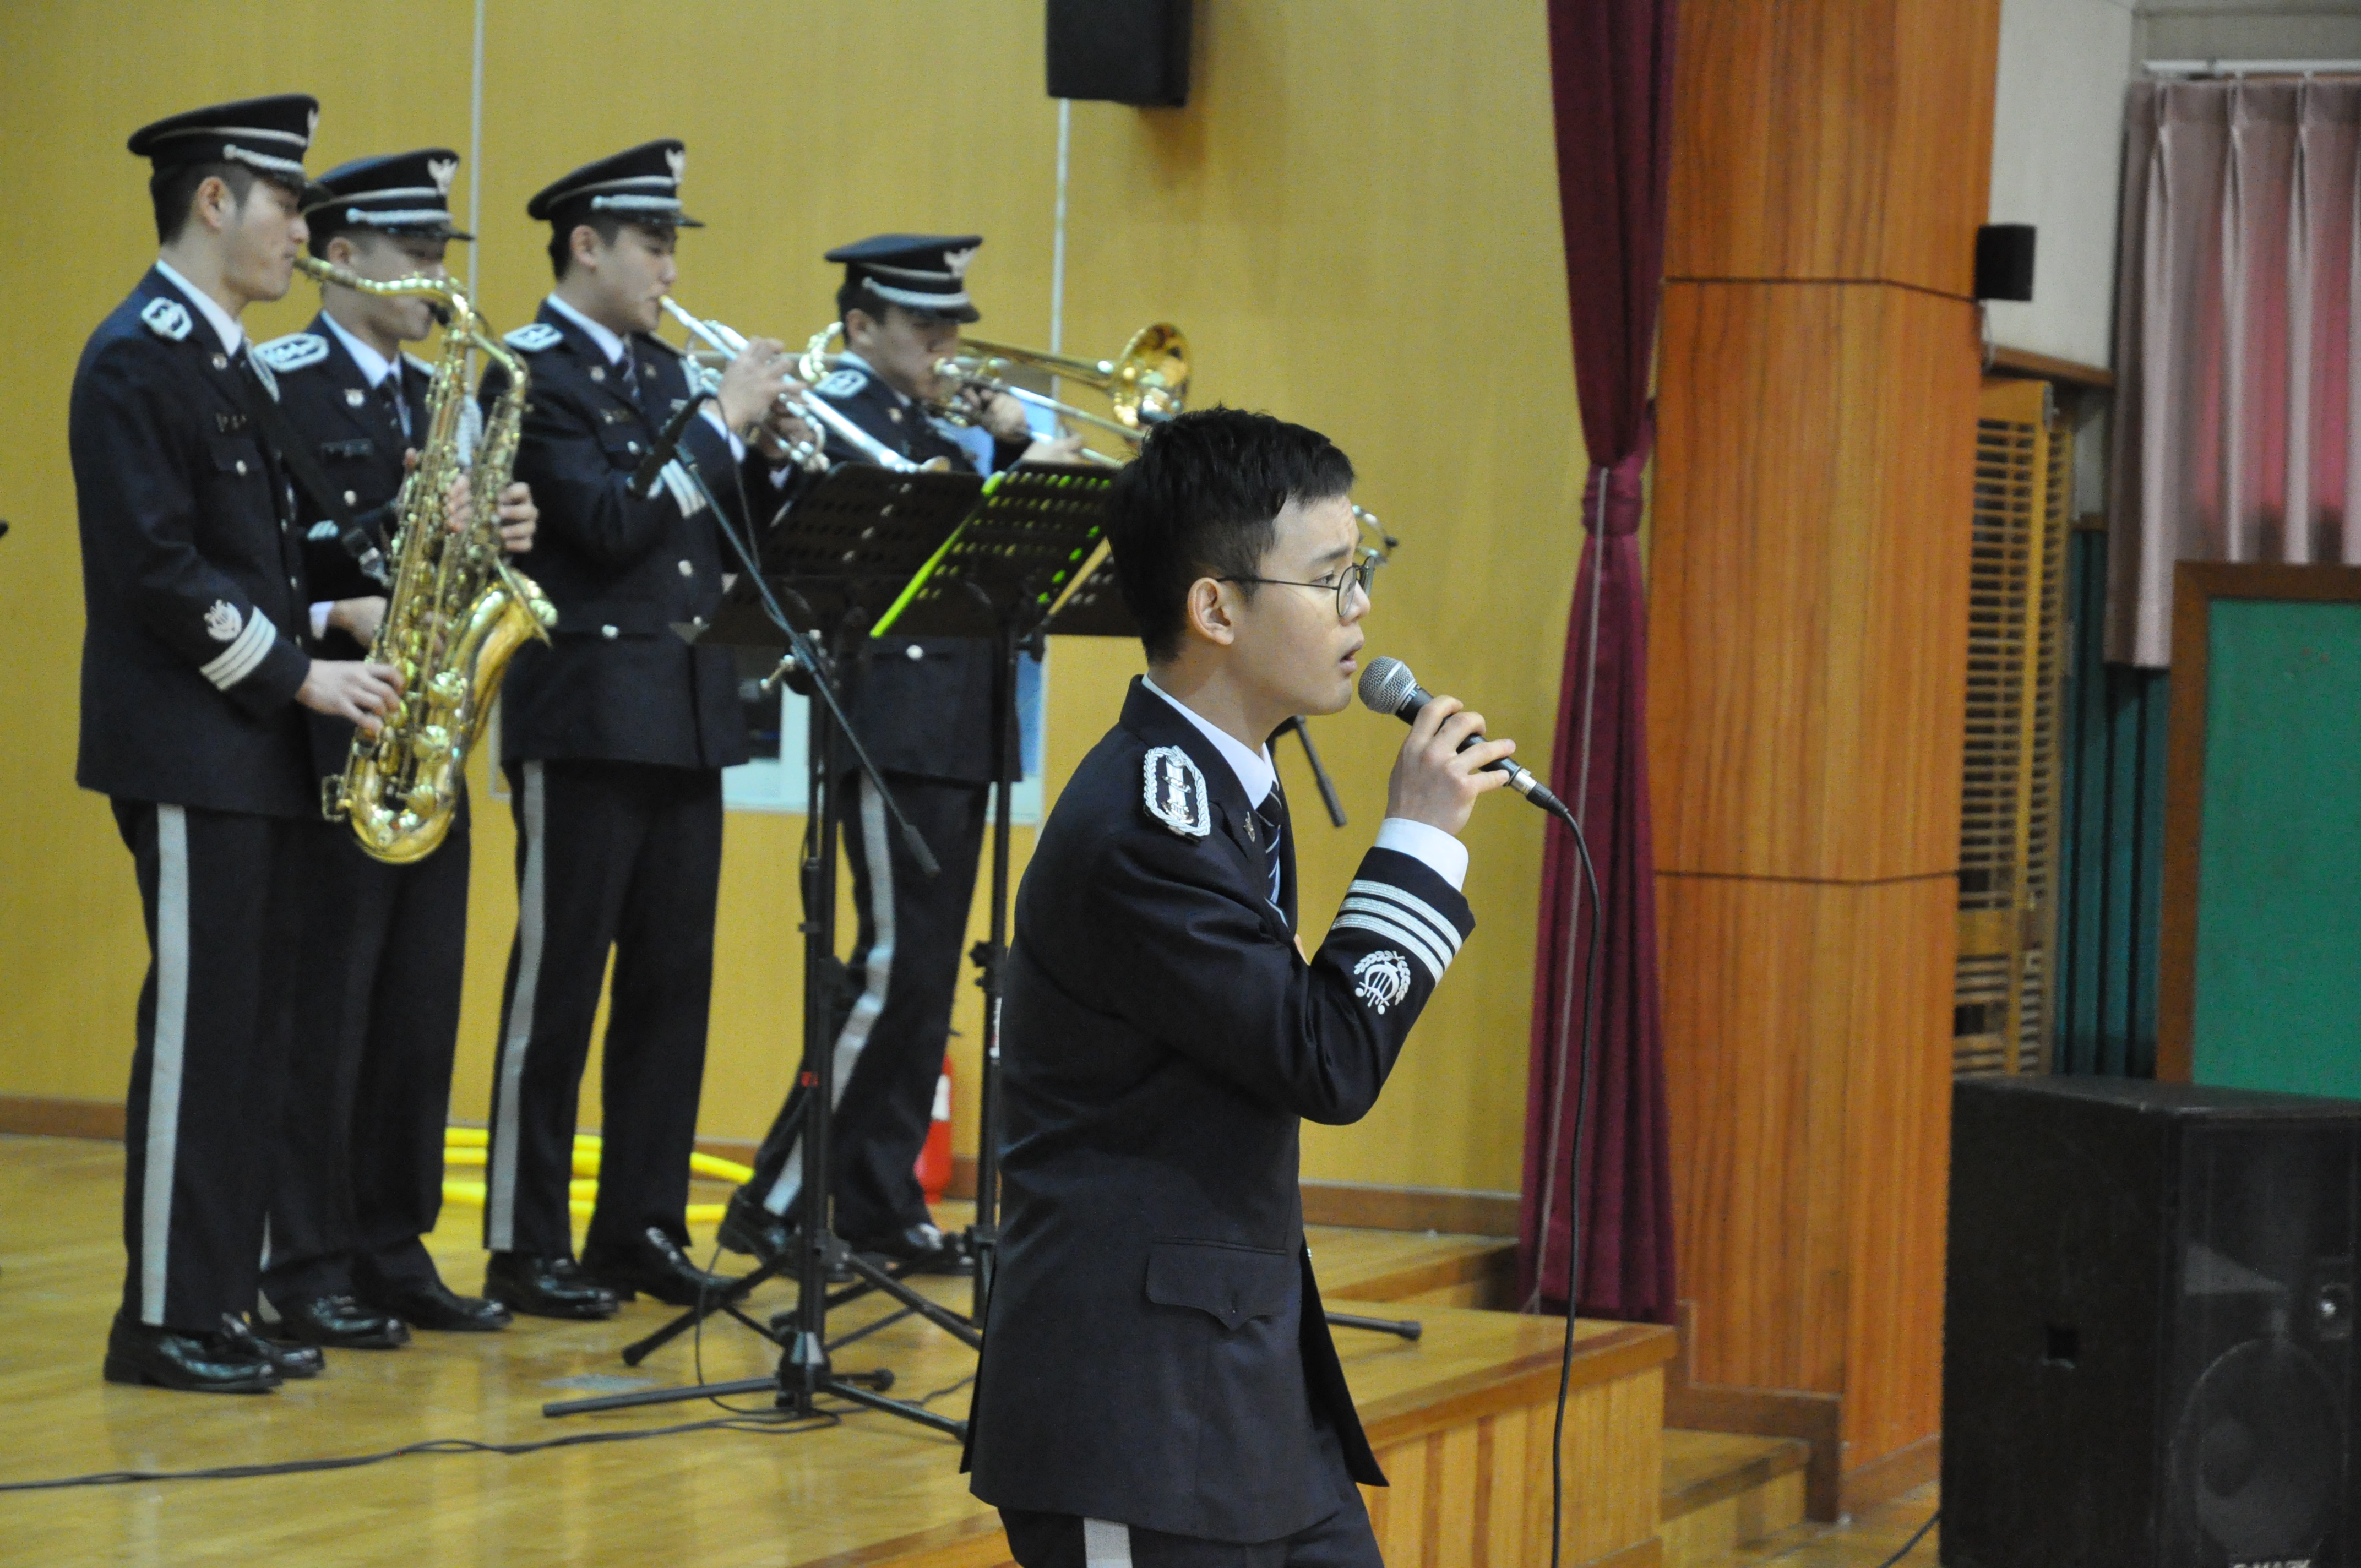 경찰악대, 「서귀포 온성학교(지체부자유특수학교), 찾아가는 학교폭력 예방」 음악회 개최